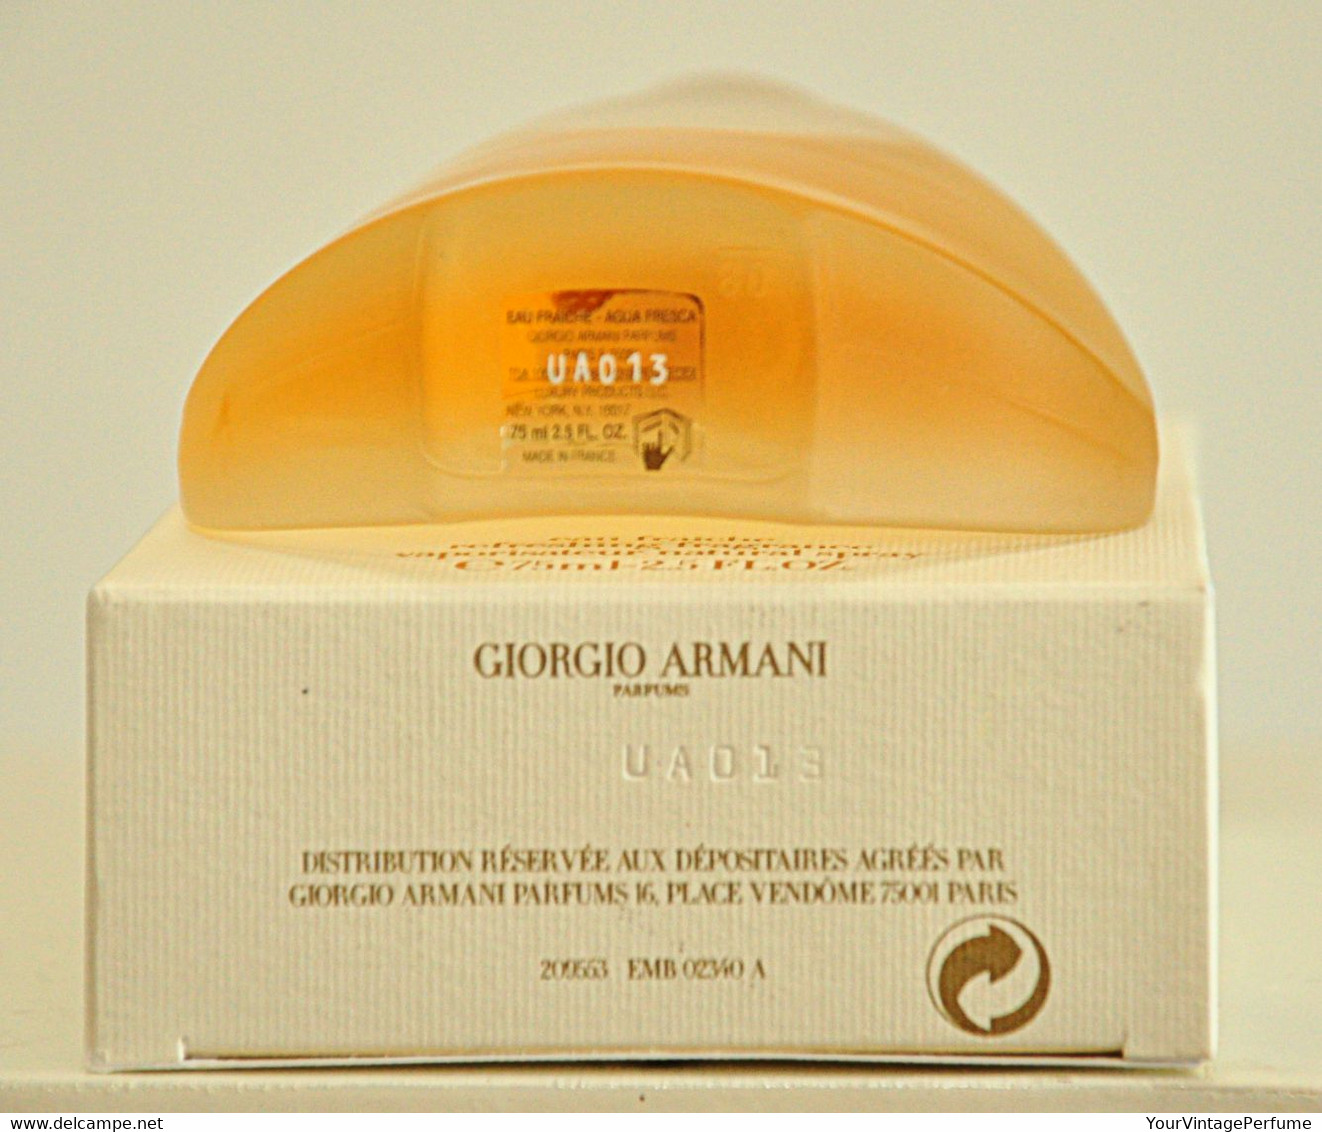 Giorgio Armani Sensi White Notes Eau Fraiche 75ml 2.5 Fl. Oz. Perfume Woman Rare Vintage 2004 - Women